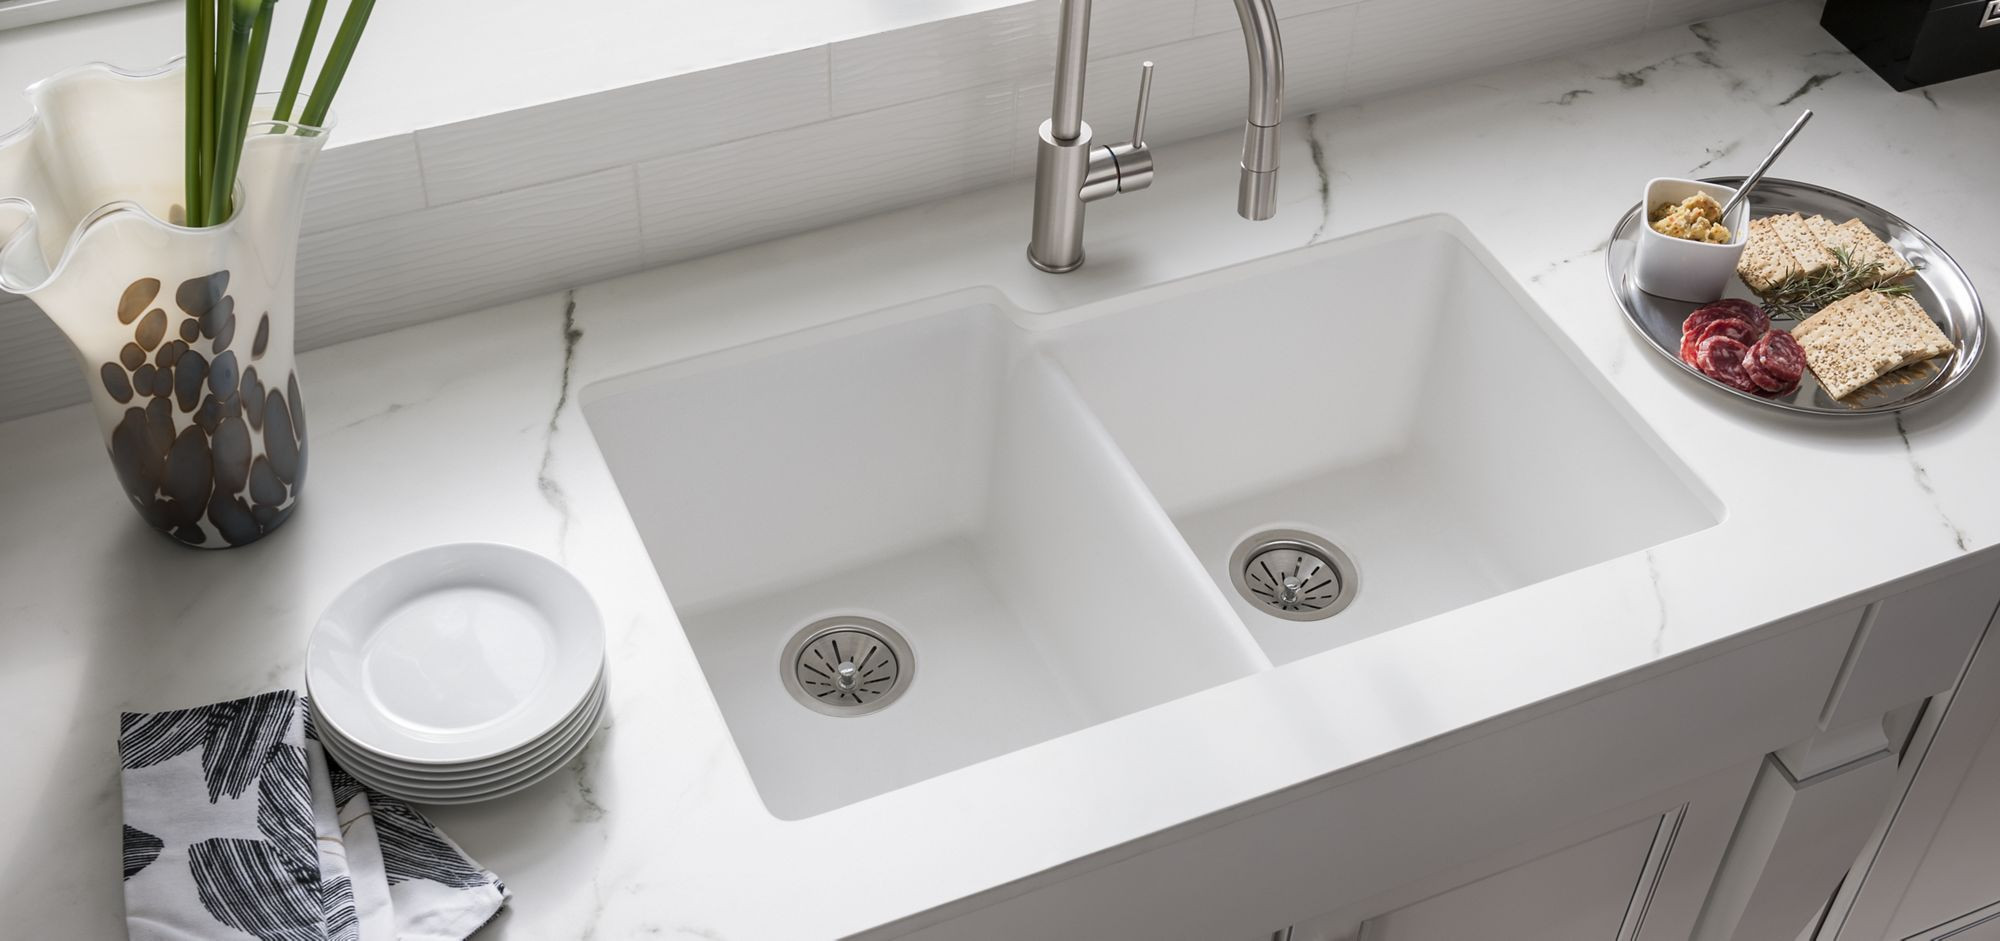 Kitchen Sink White
 Best Kitchen Sink Trends – Loretta J Willis DESIGNER